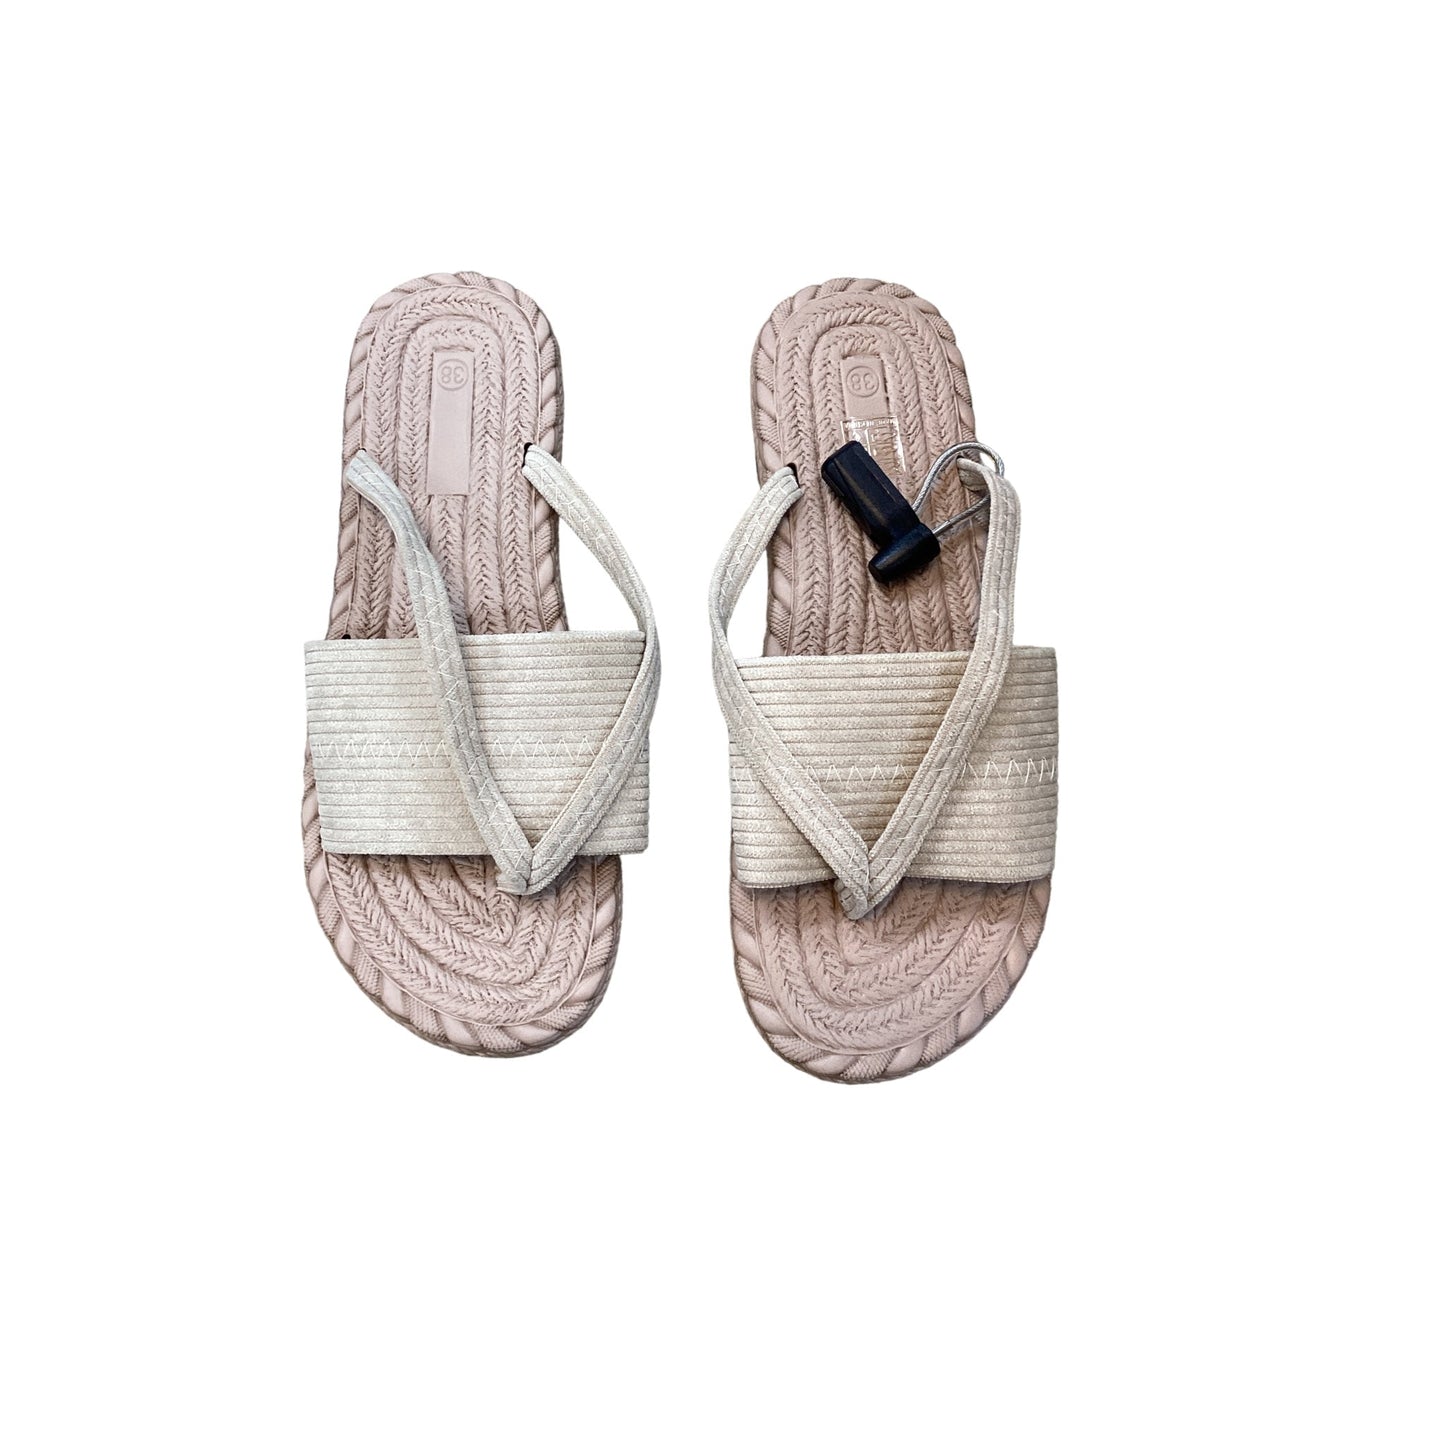 Tan Sandals Flats Cmf, Size 7.5